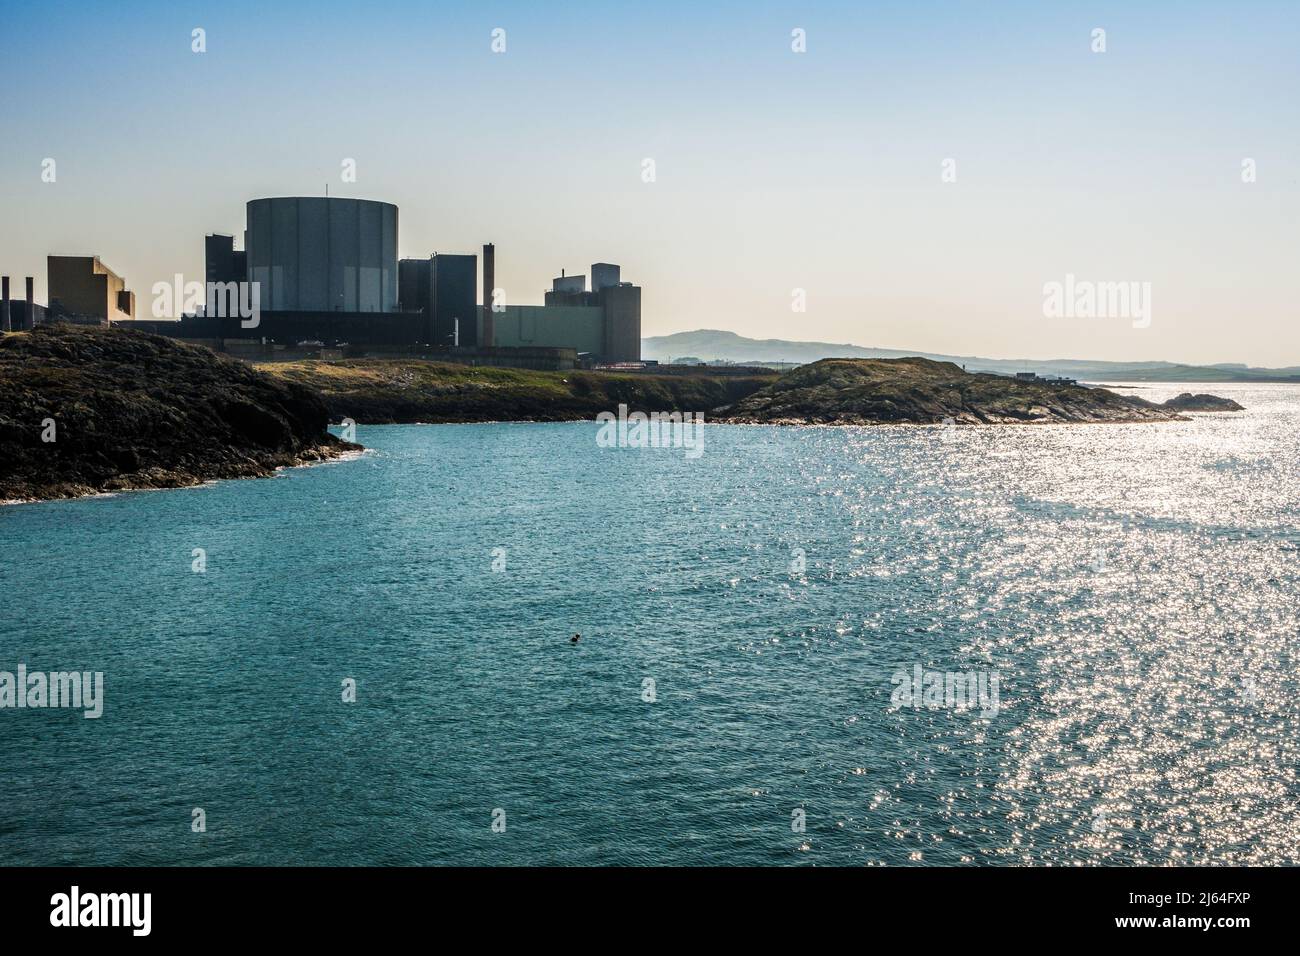 La central nuclear de Wylfa en Anglesey, al norte de Gales, es una central nuclear de Magnox que actualmente está siendo desmantelada Foto de stock